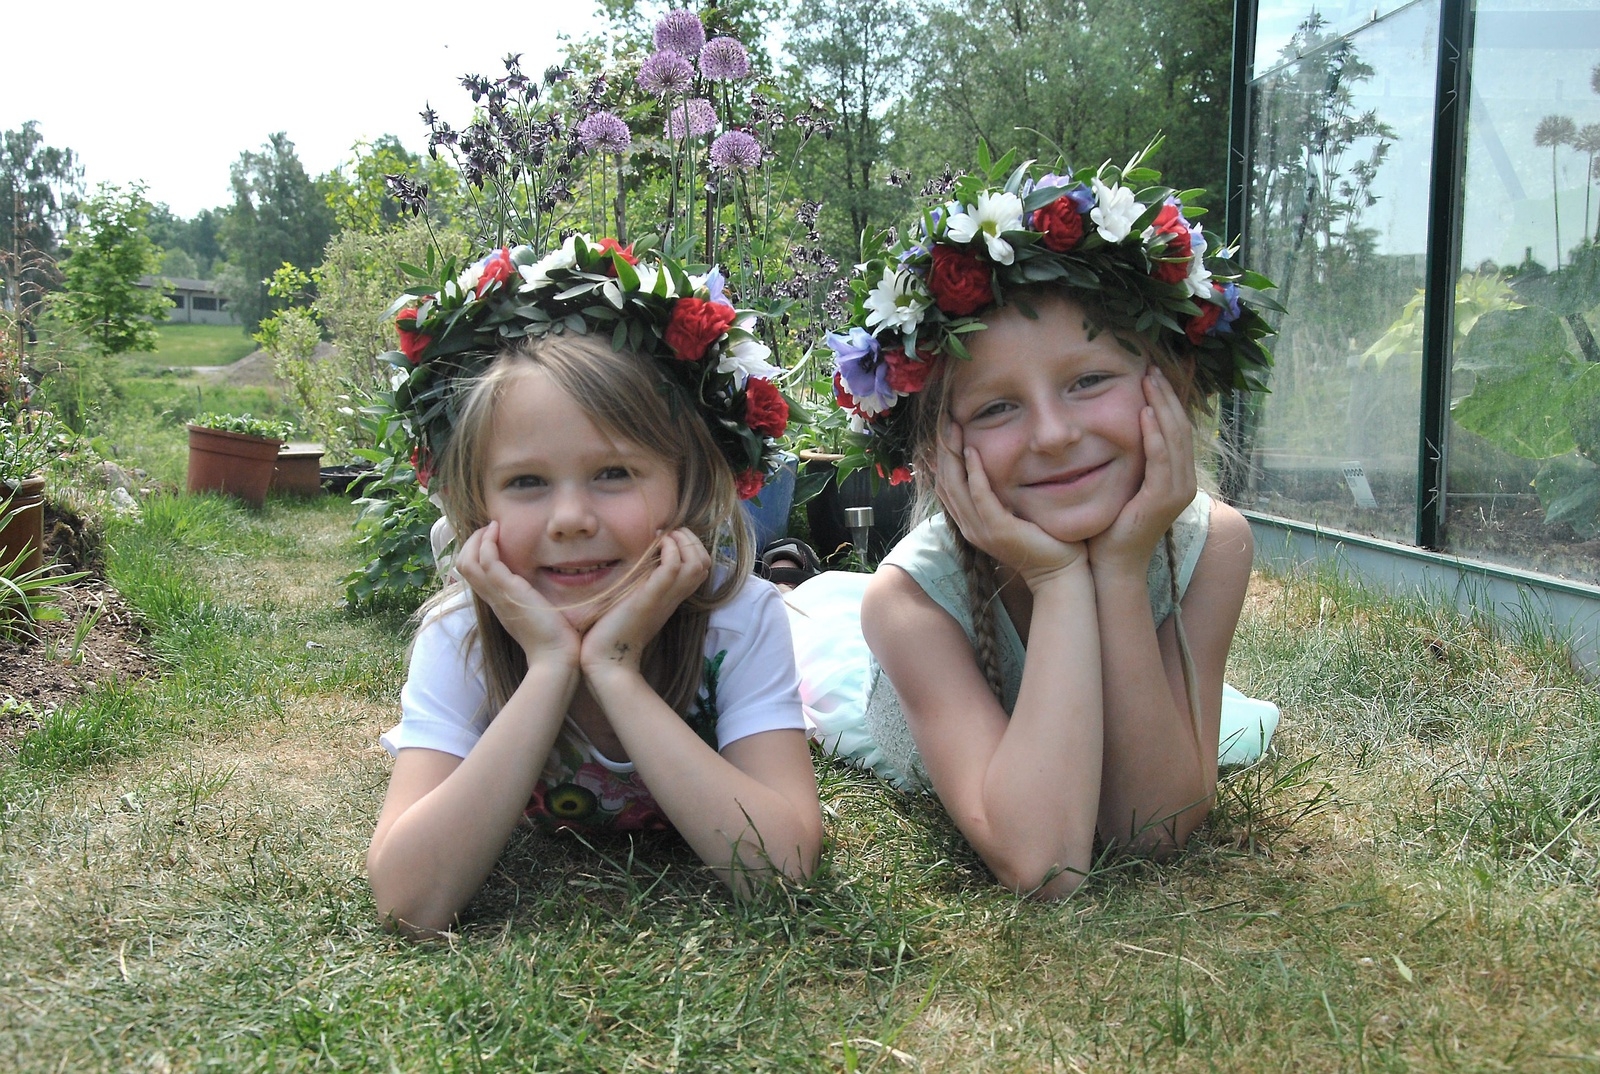 Glad midsommar önskas alla Norra Skånes läsare av blomsterflickorna Isabelle Höghäll, 6 år och Lovis Gustafsson, 6 år. 
Foto: Marie Strömberg Andersson